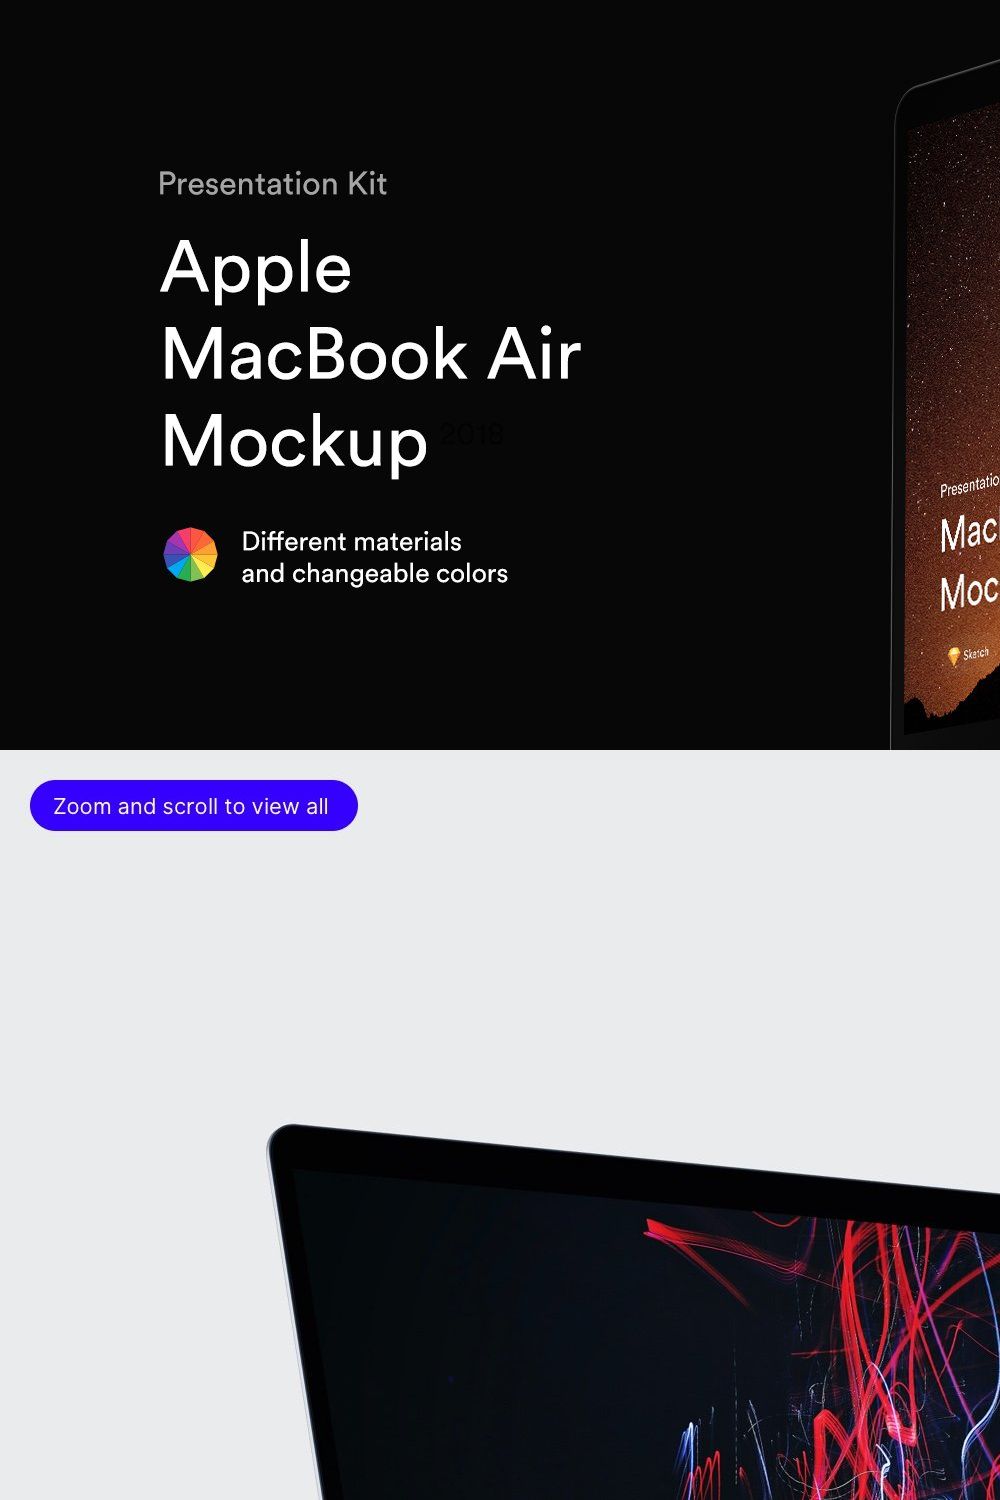 MacBook Air Mockups (2018) | PK pinterest preview image.